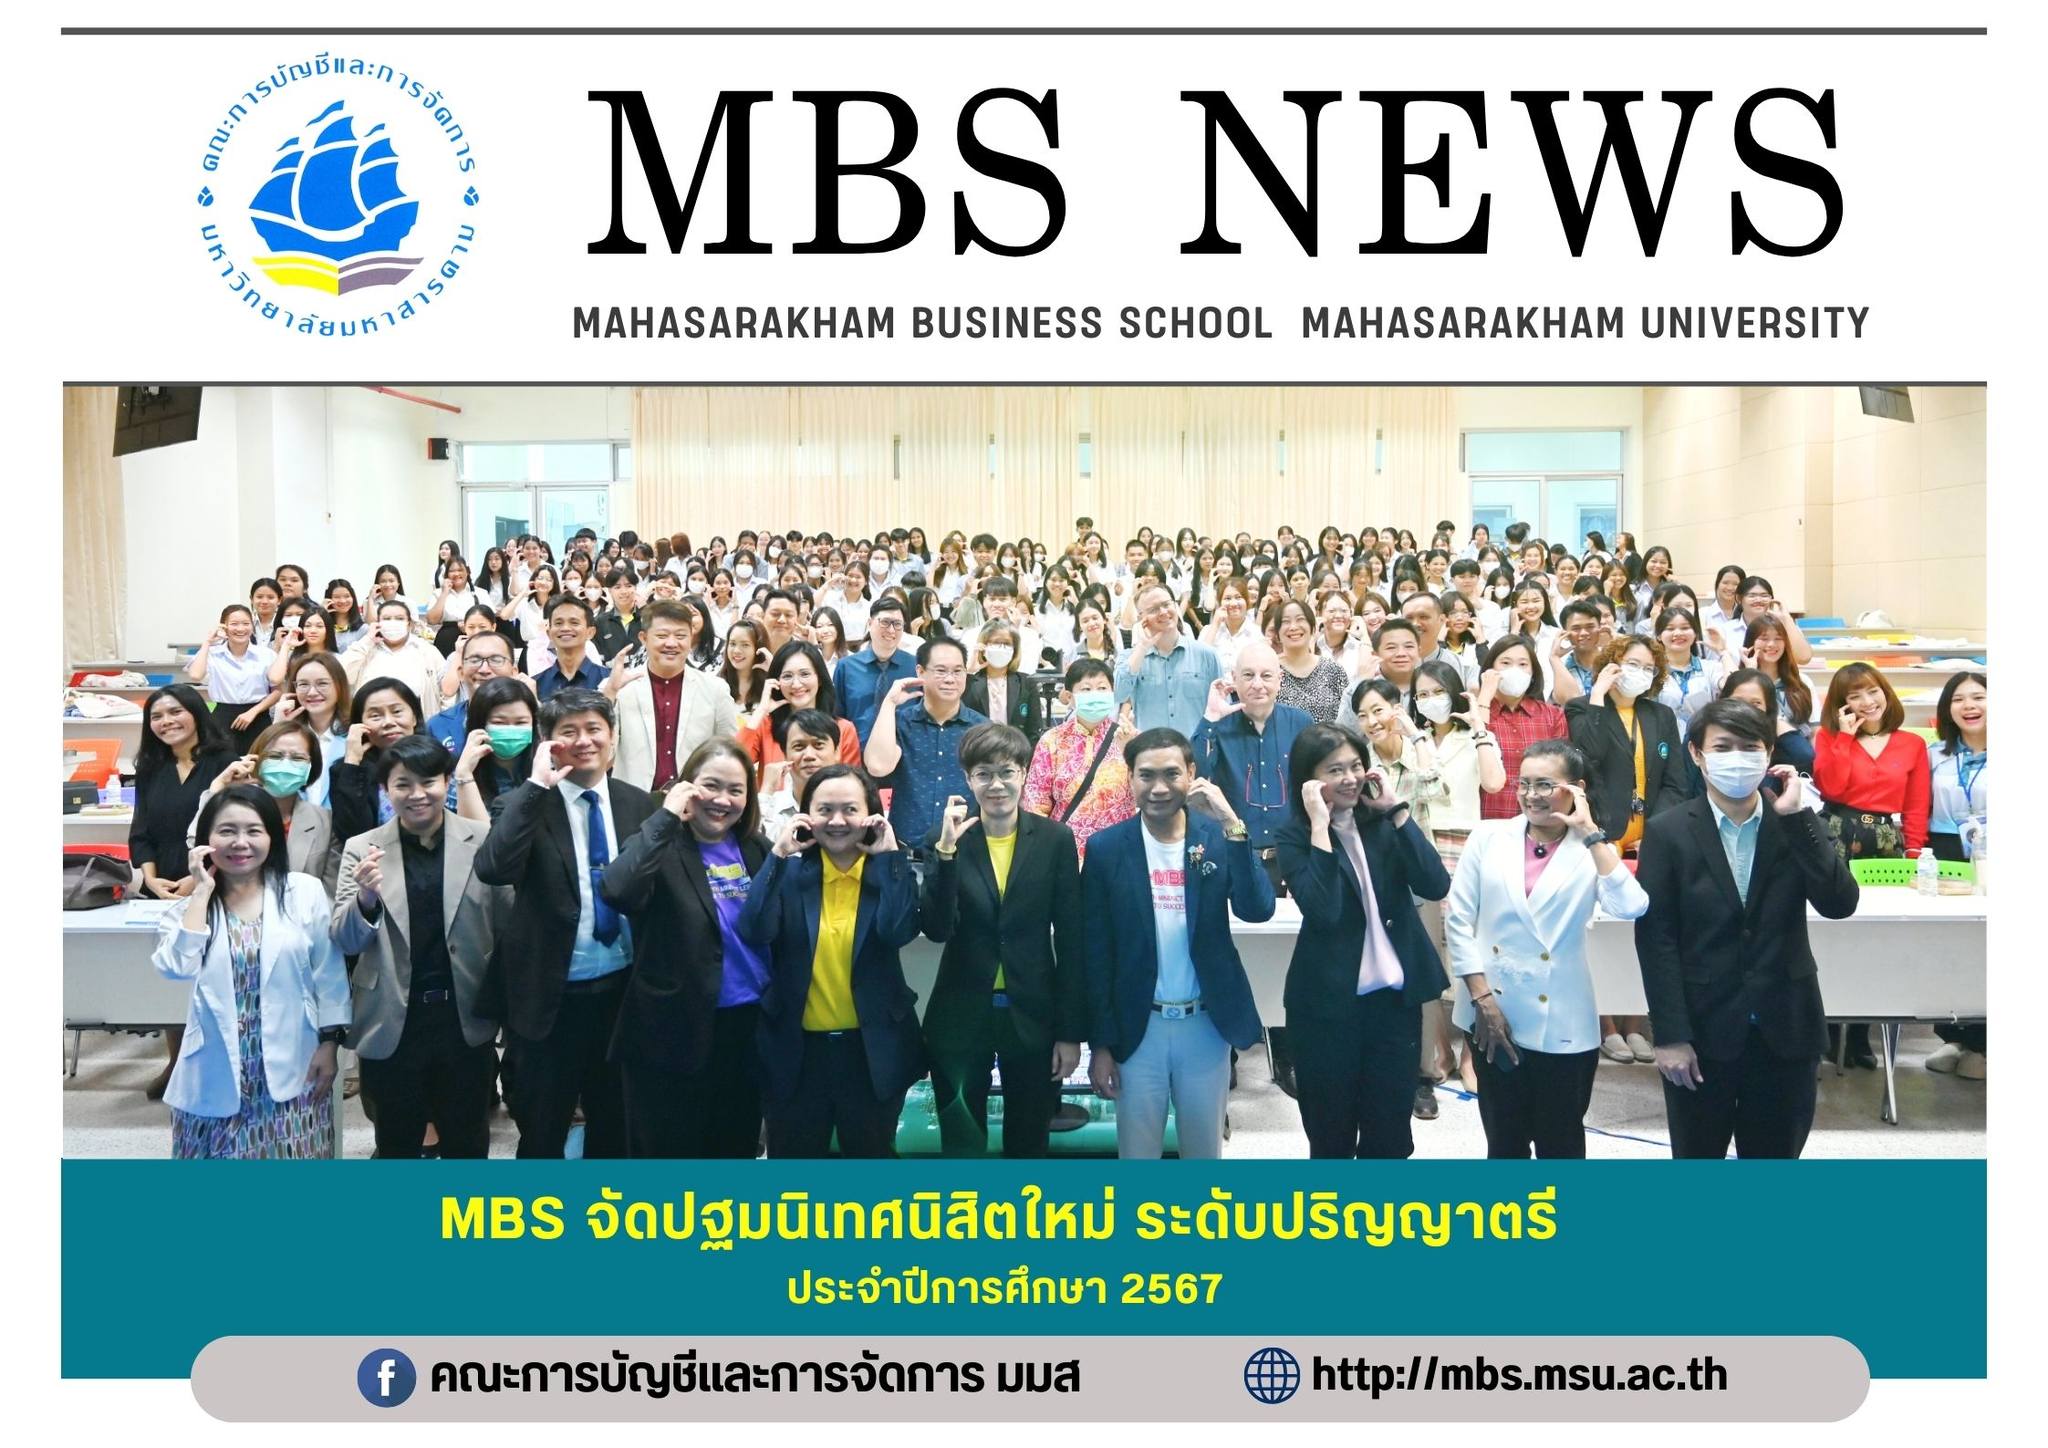 MBS จัดปฐมนิเทศนิสิตใหม่ ระดับปริญญาตรี ประจำปีการศึกษา 2567